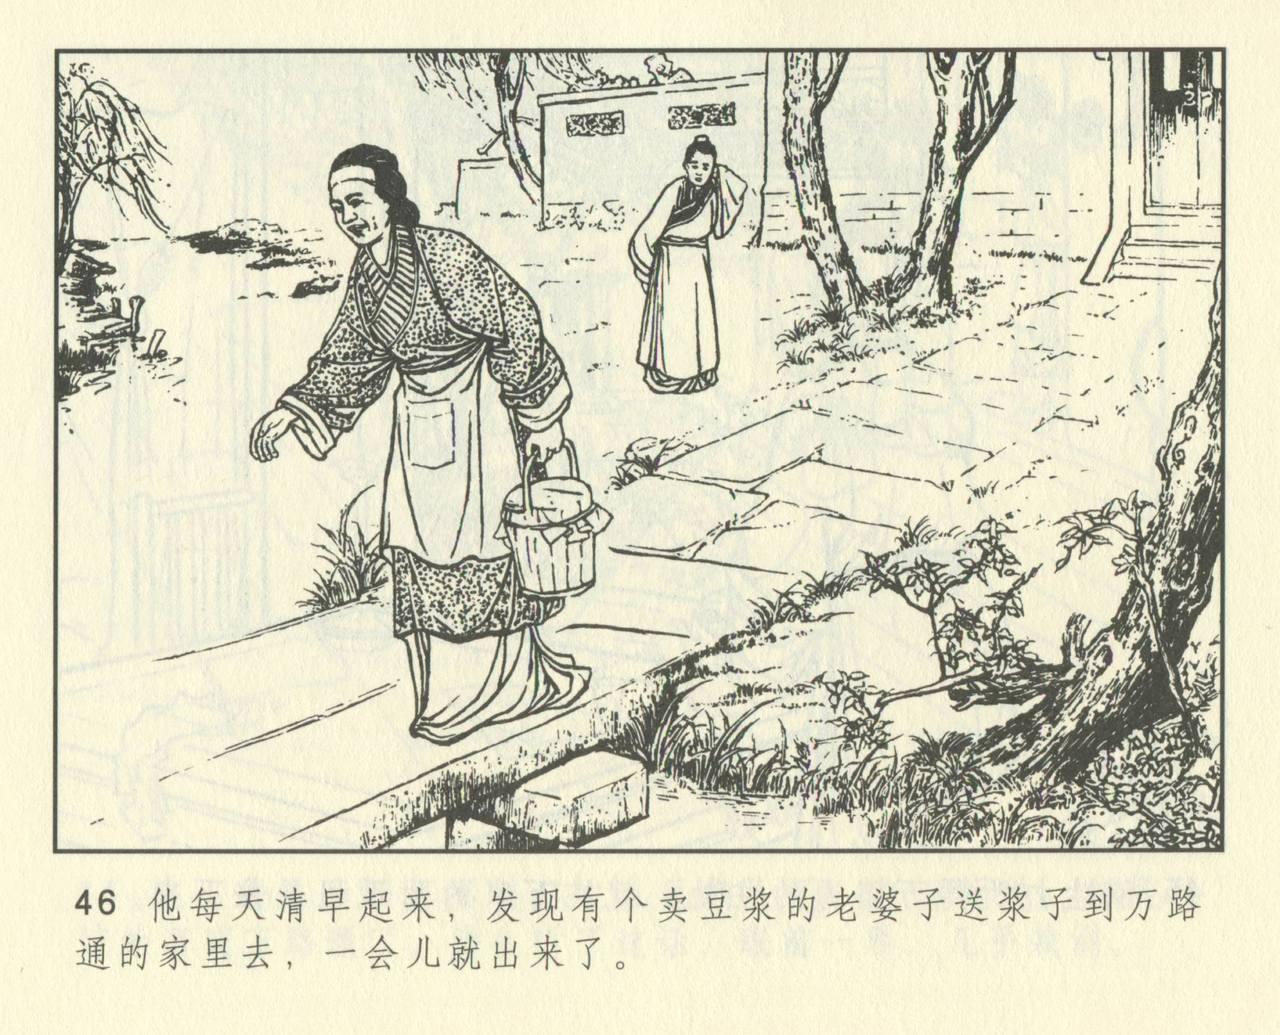 聊斋志异 张玮等绘 天津人民美术出版社 卷二十一 ~ 三十 457